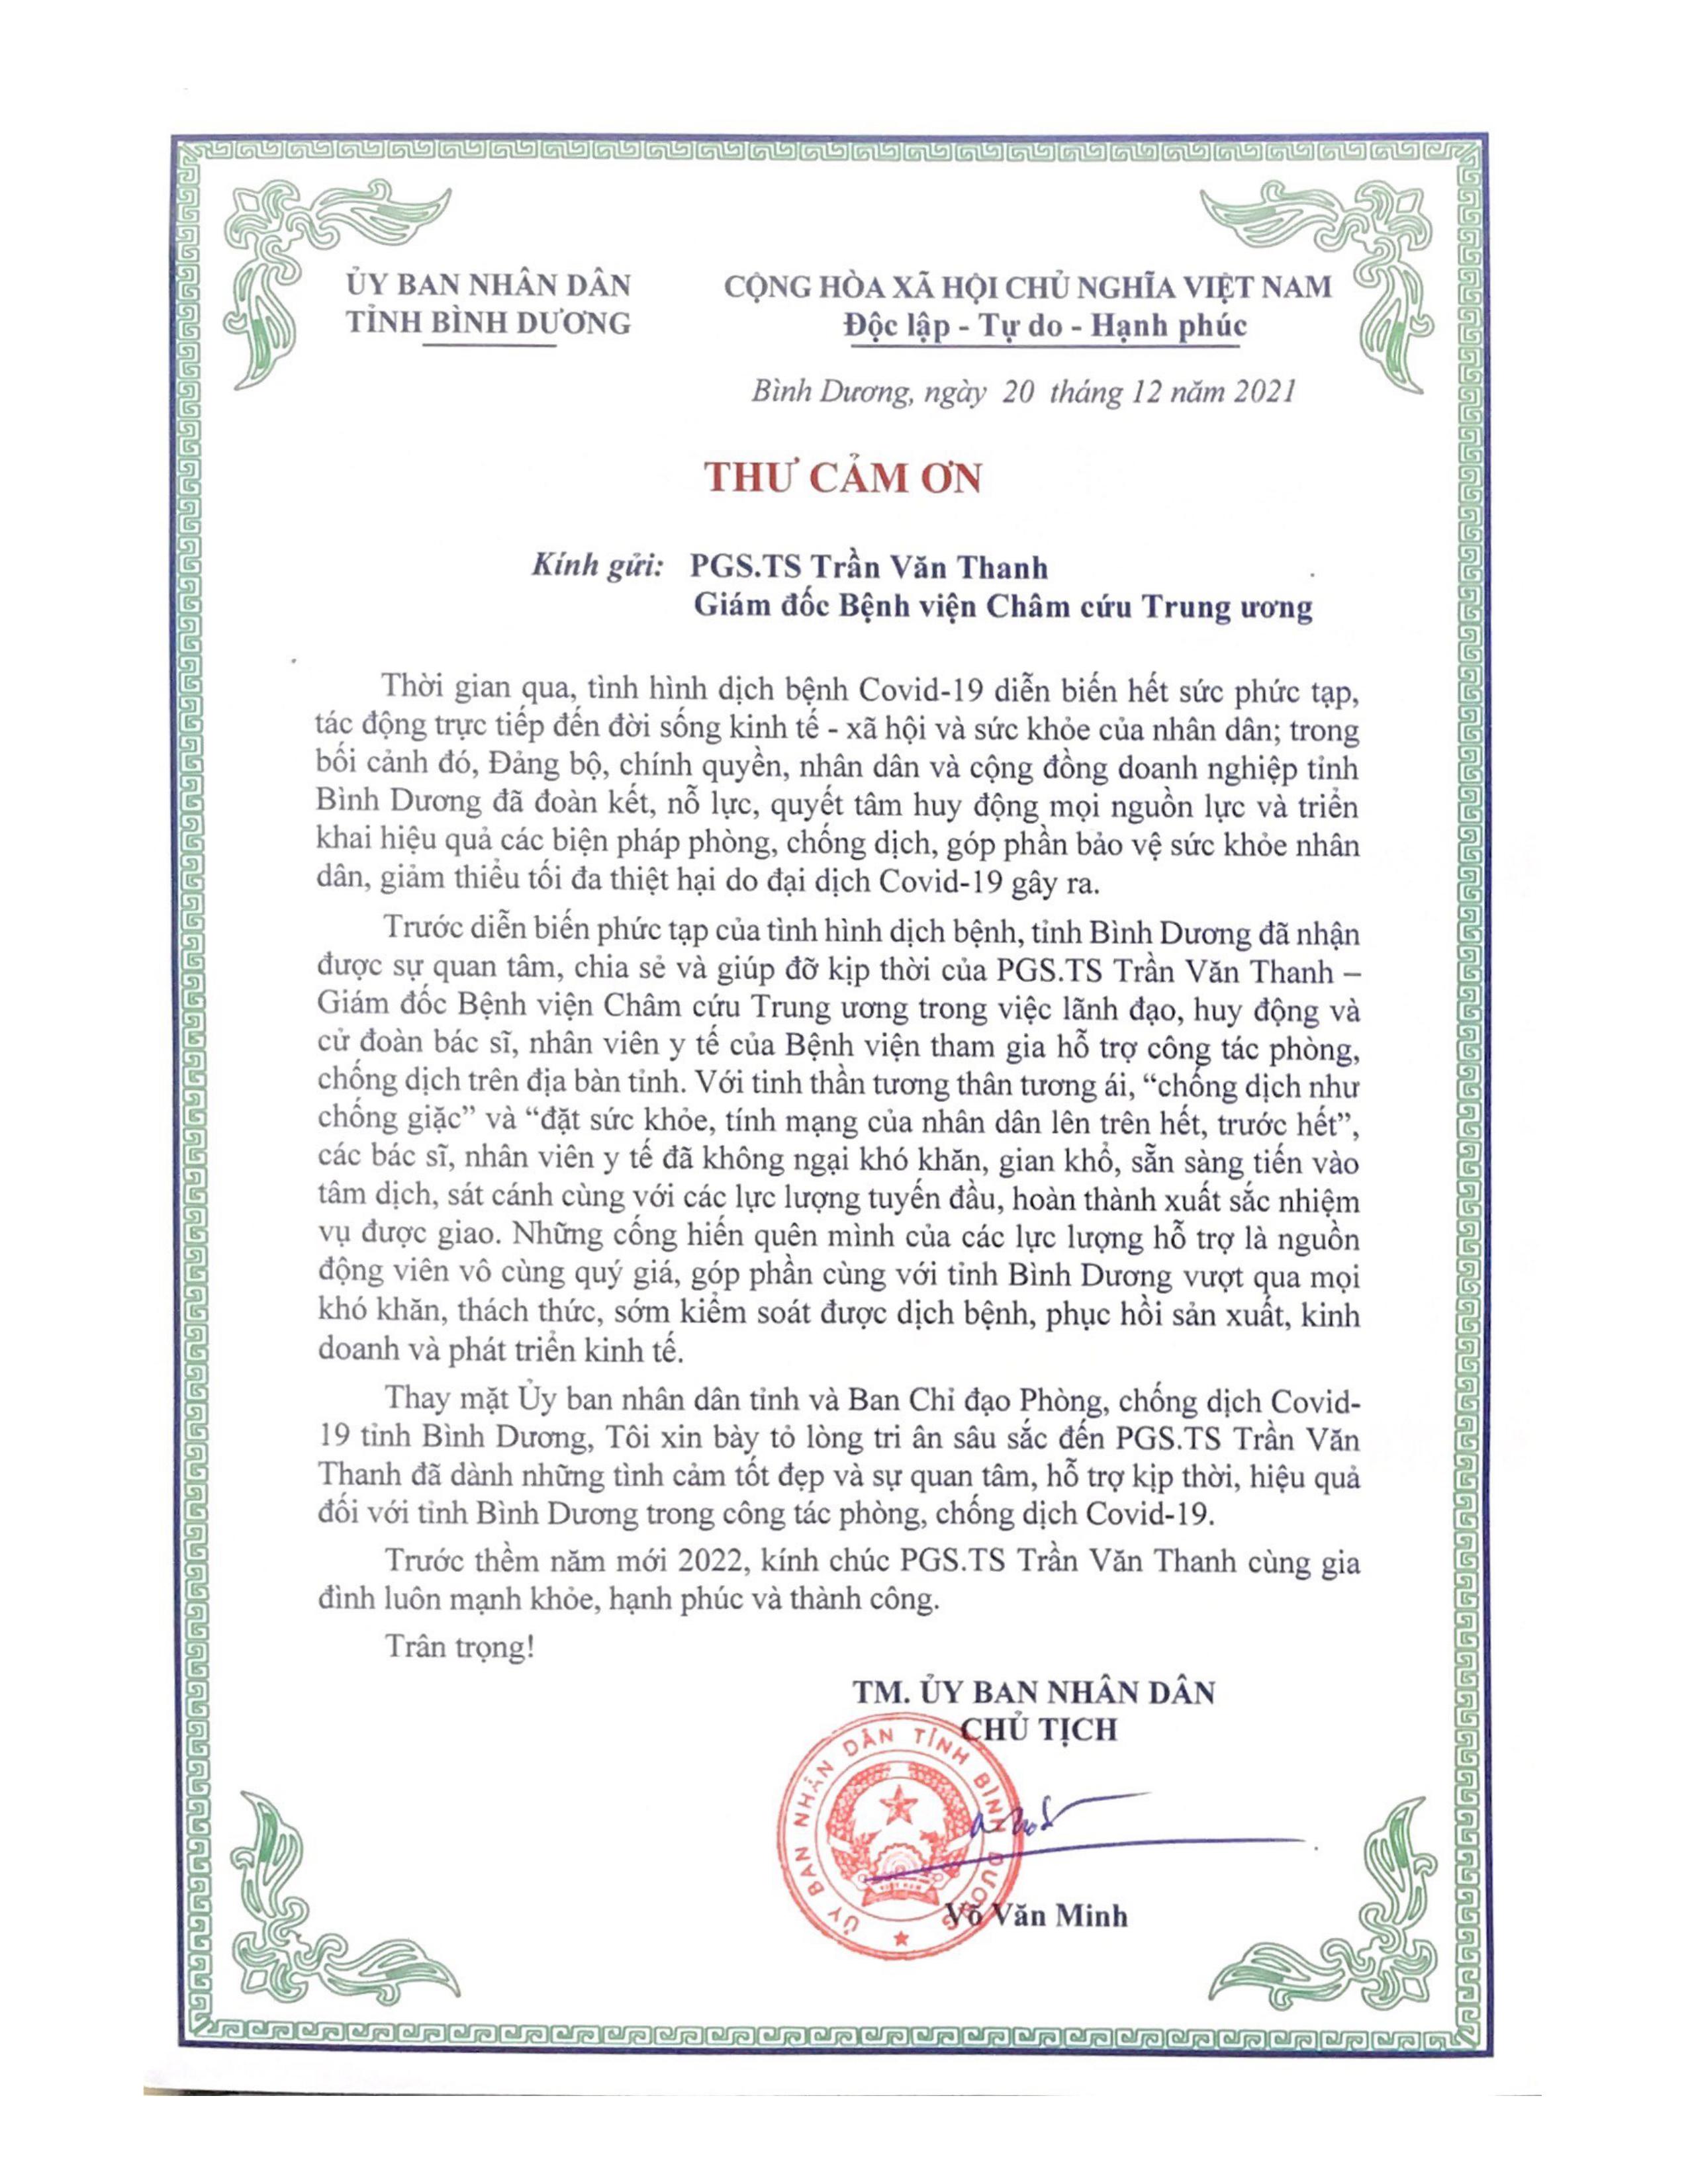 UBND tỉnh Bình Dương cảm ơn Bệnh viện Châm cứu Trung ương trong công tác phòng chống dịch Covid- 19